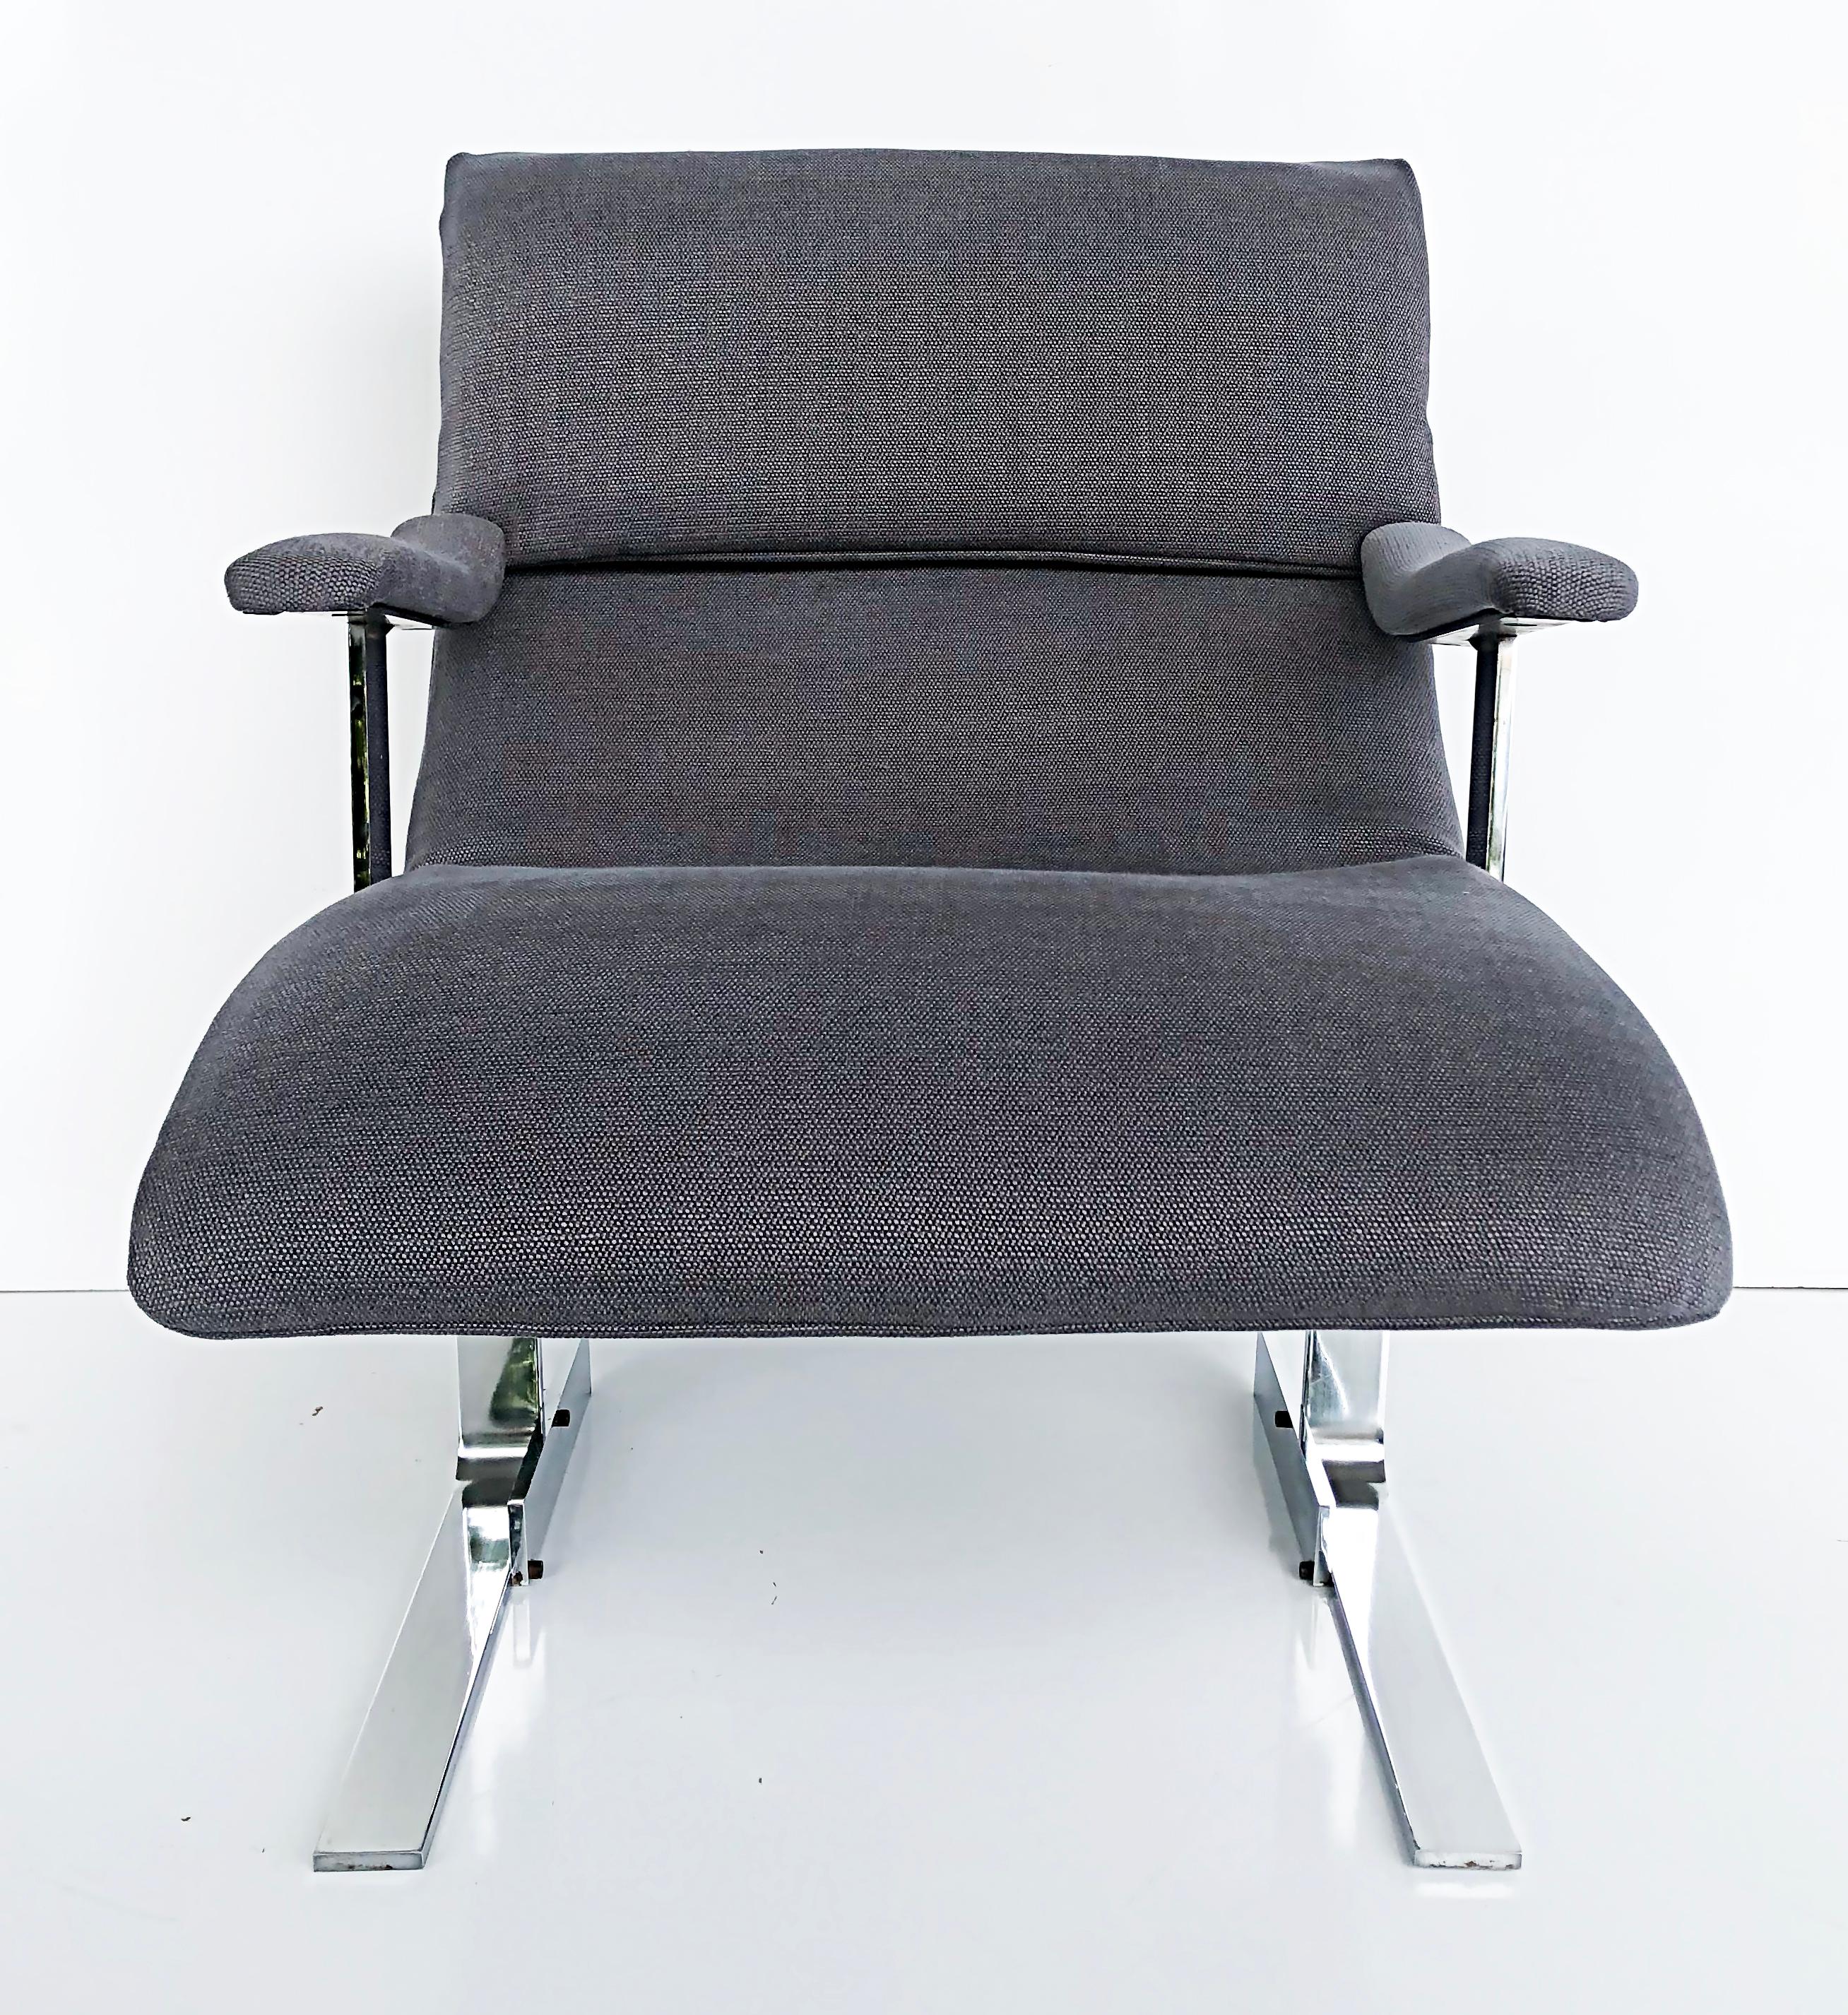 Fauteuils club attribués à Saporiti Italia, nouveau tissu d'ameublement Kravet

Nous vous proposons à la vente une paire de fauteuils club qui ont été récemment tapissés de tissu Kravet. Ces substantielles chaises club en acier inoxydable sont